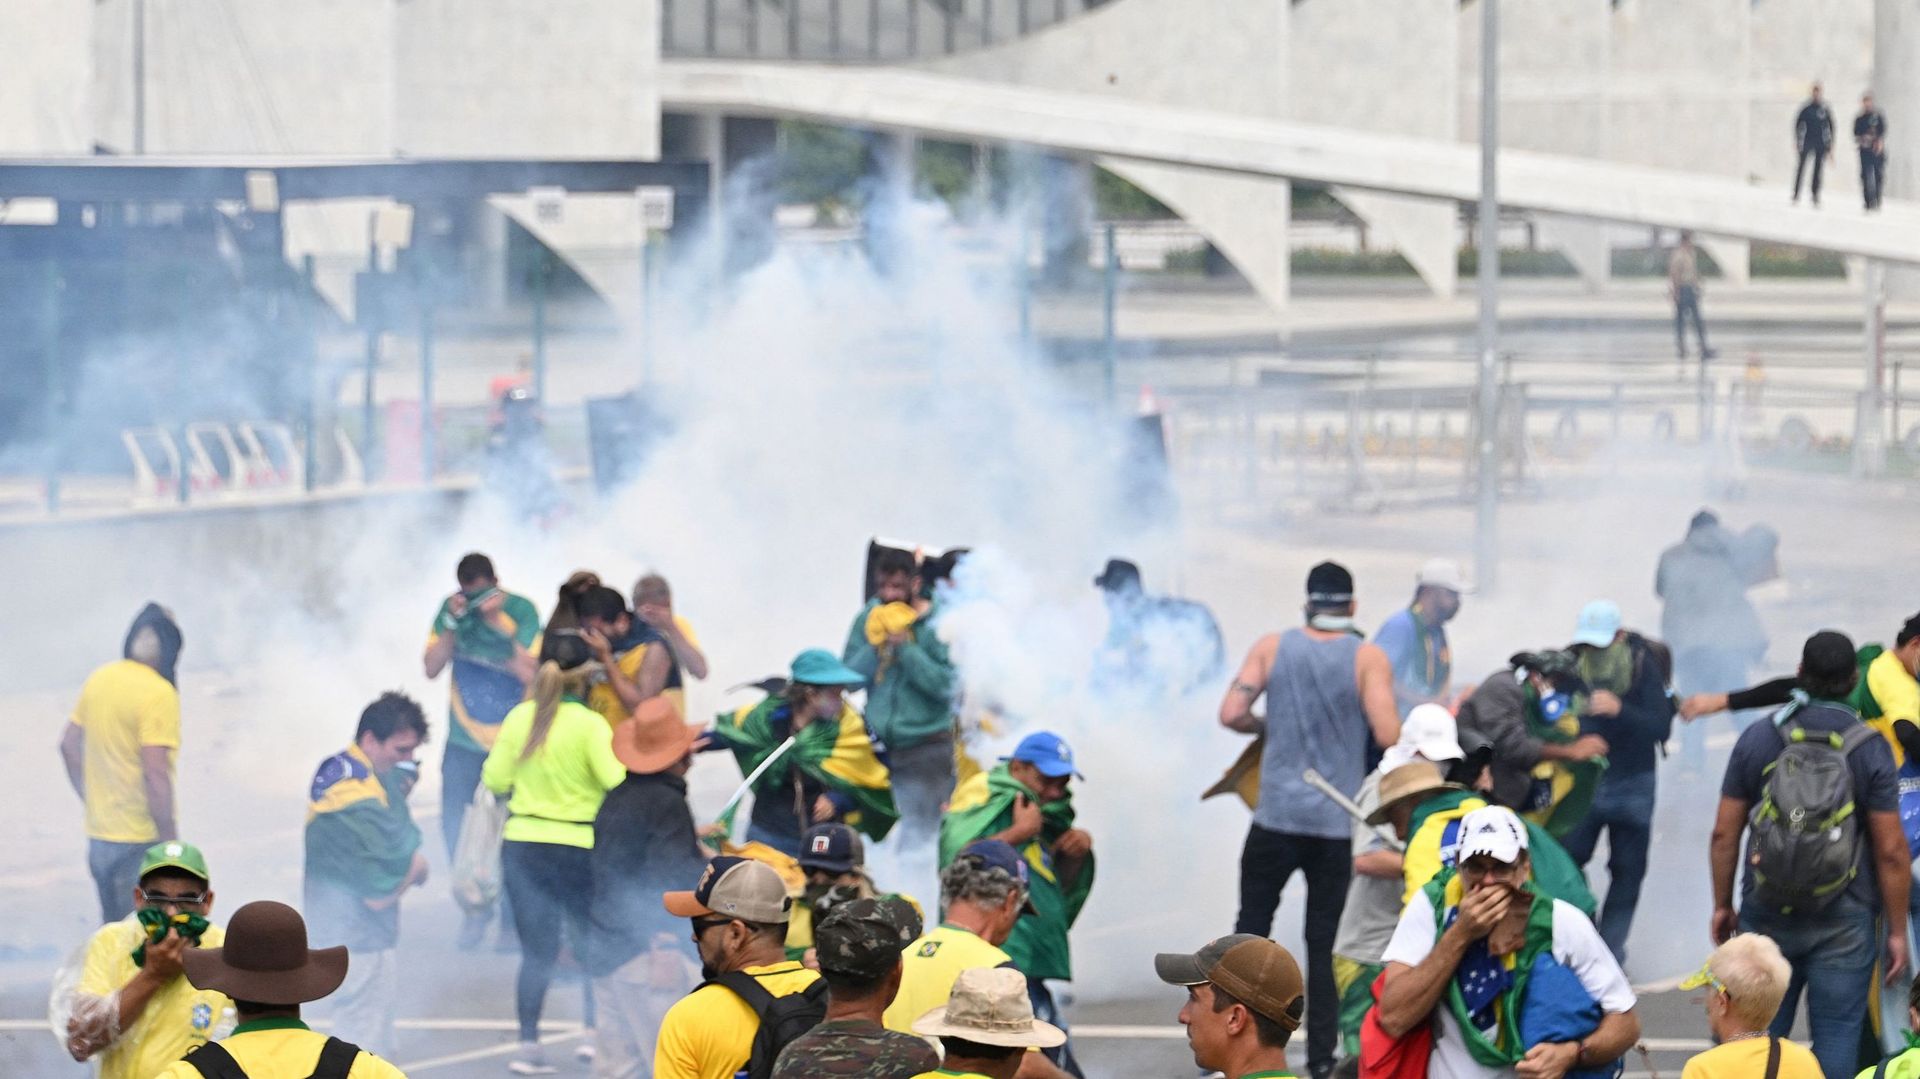 Des partisans de l’ancien président brésilien Jair Bolsonaro s’affrontent avec la police lors d’une manifestation devant le palais du Planalto à Brasilia, le 8 janvier 2023.